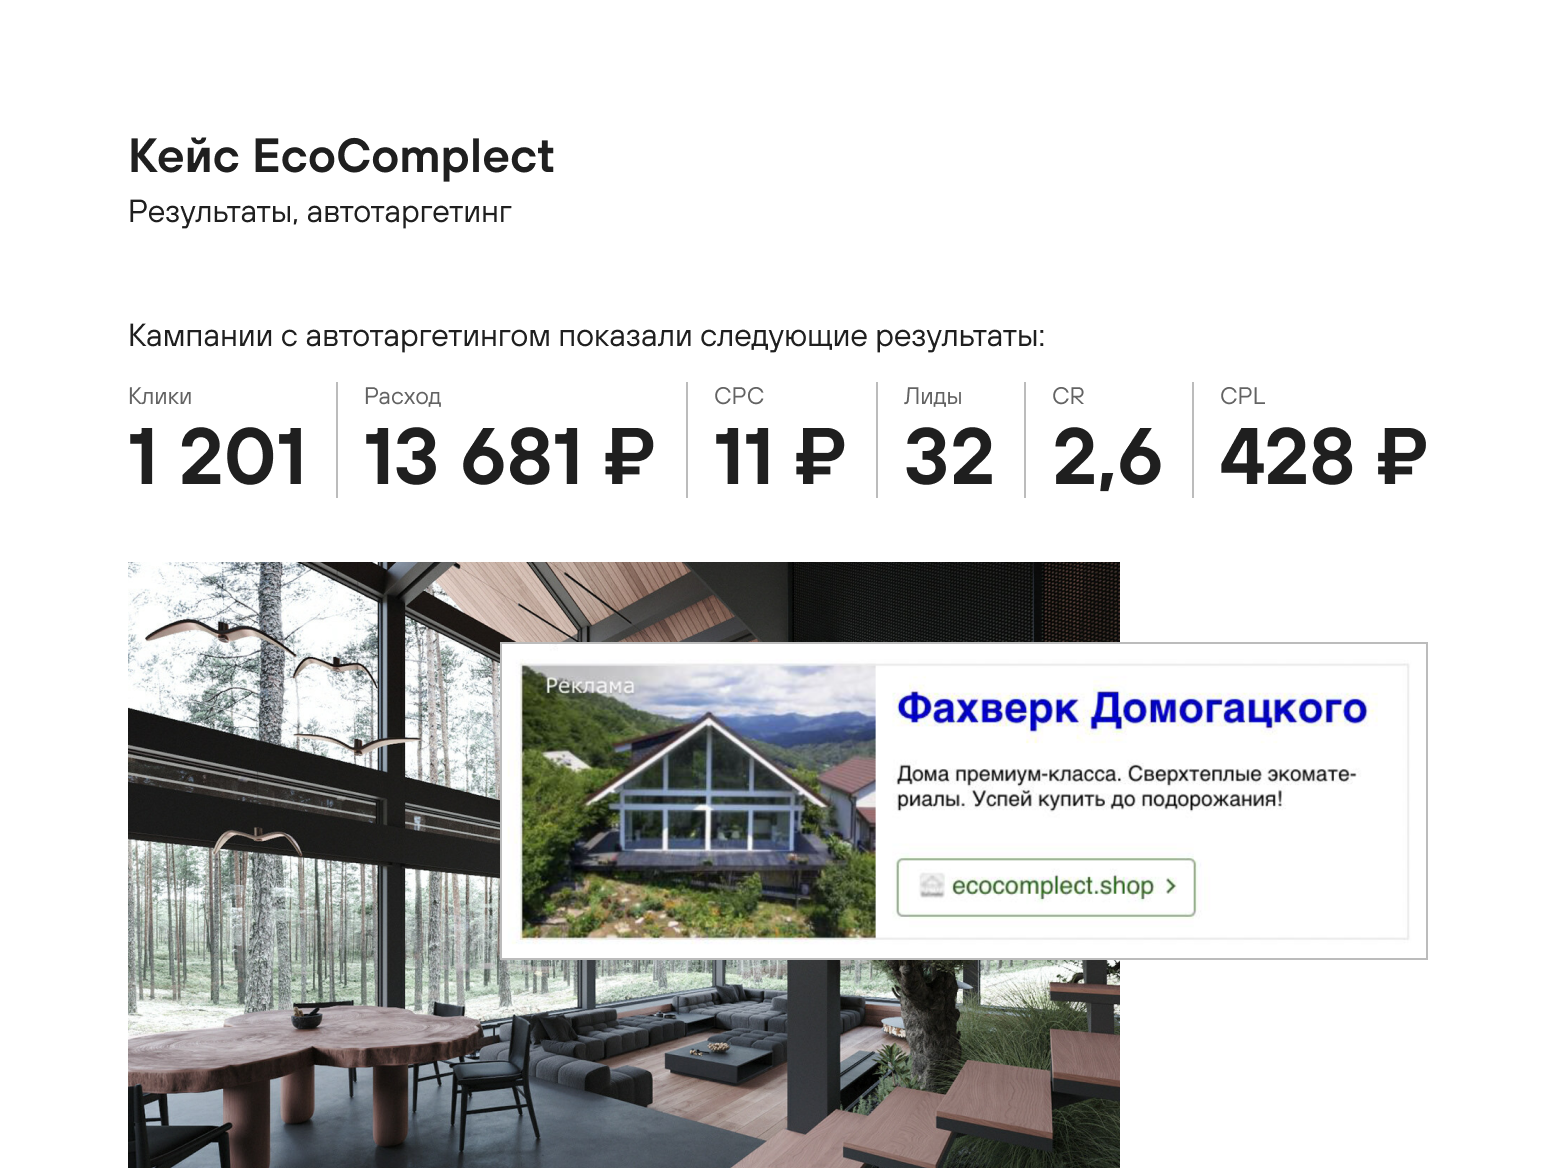 Ecocomplect: Продажа фахверков Домогацкого с наилучшим CPL в  контекстной и таргетированной рекламе среди агентств